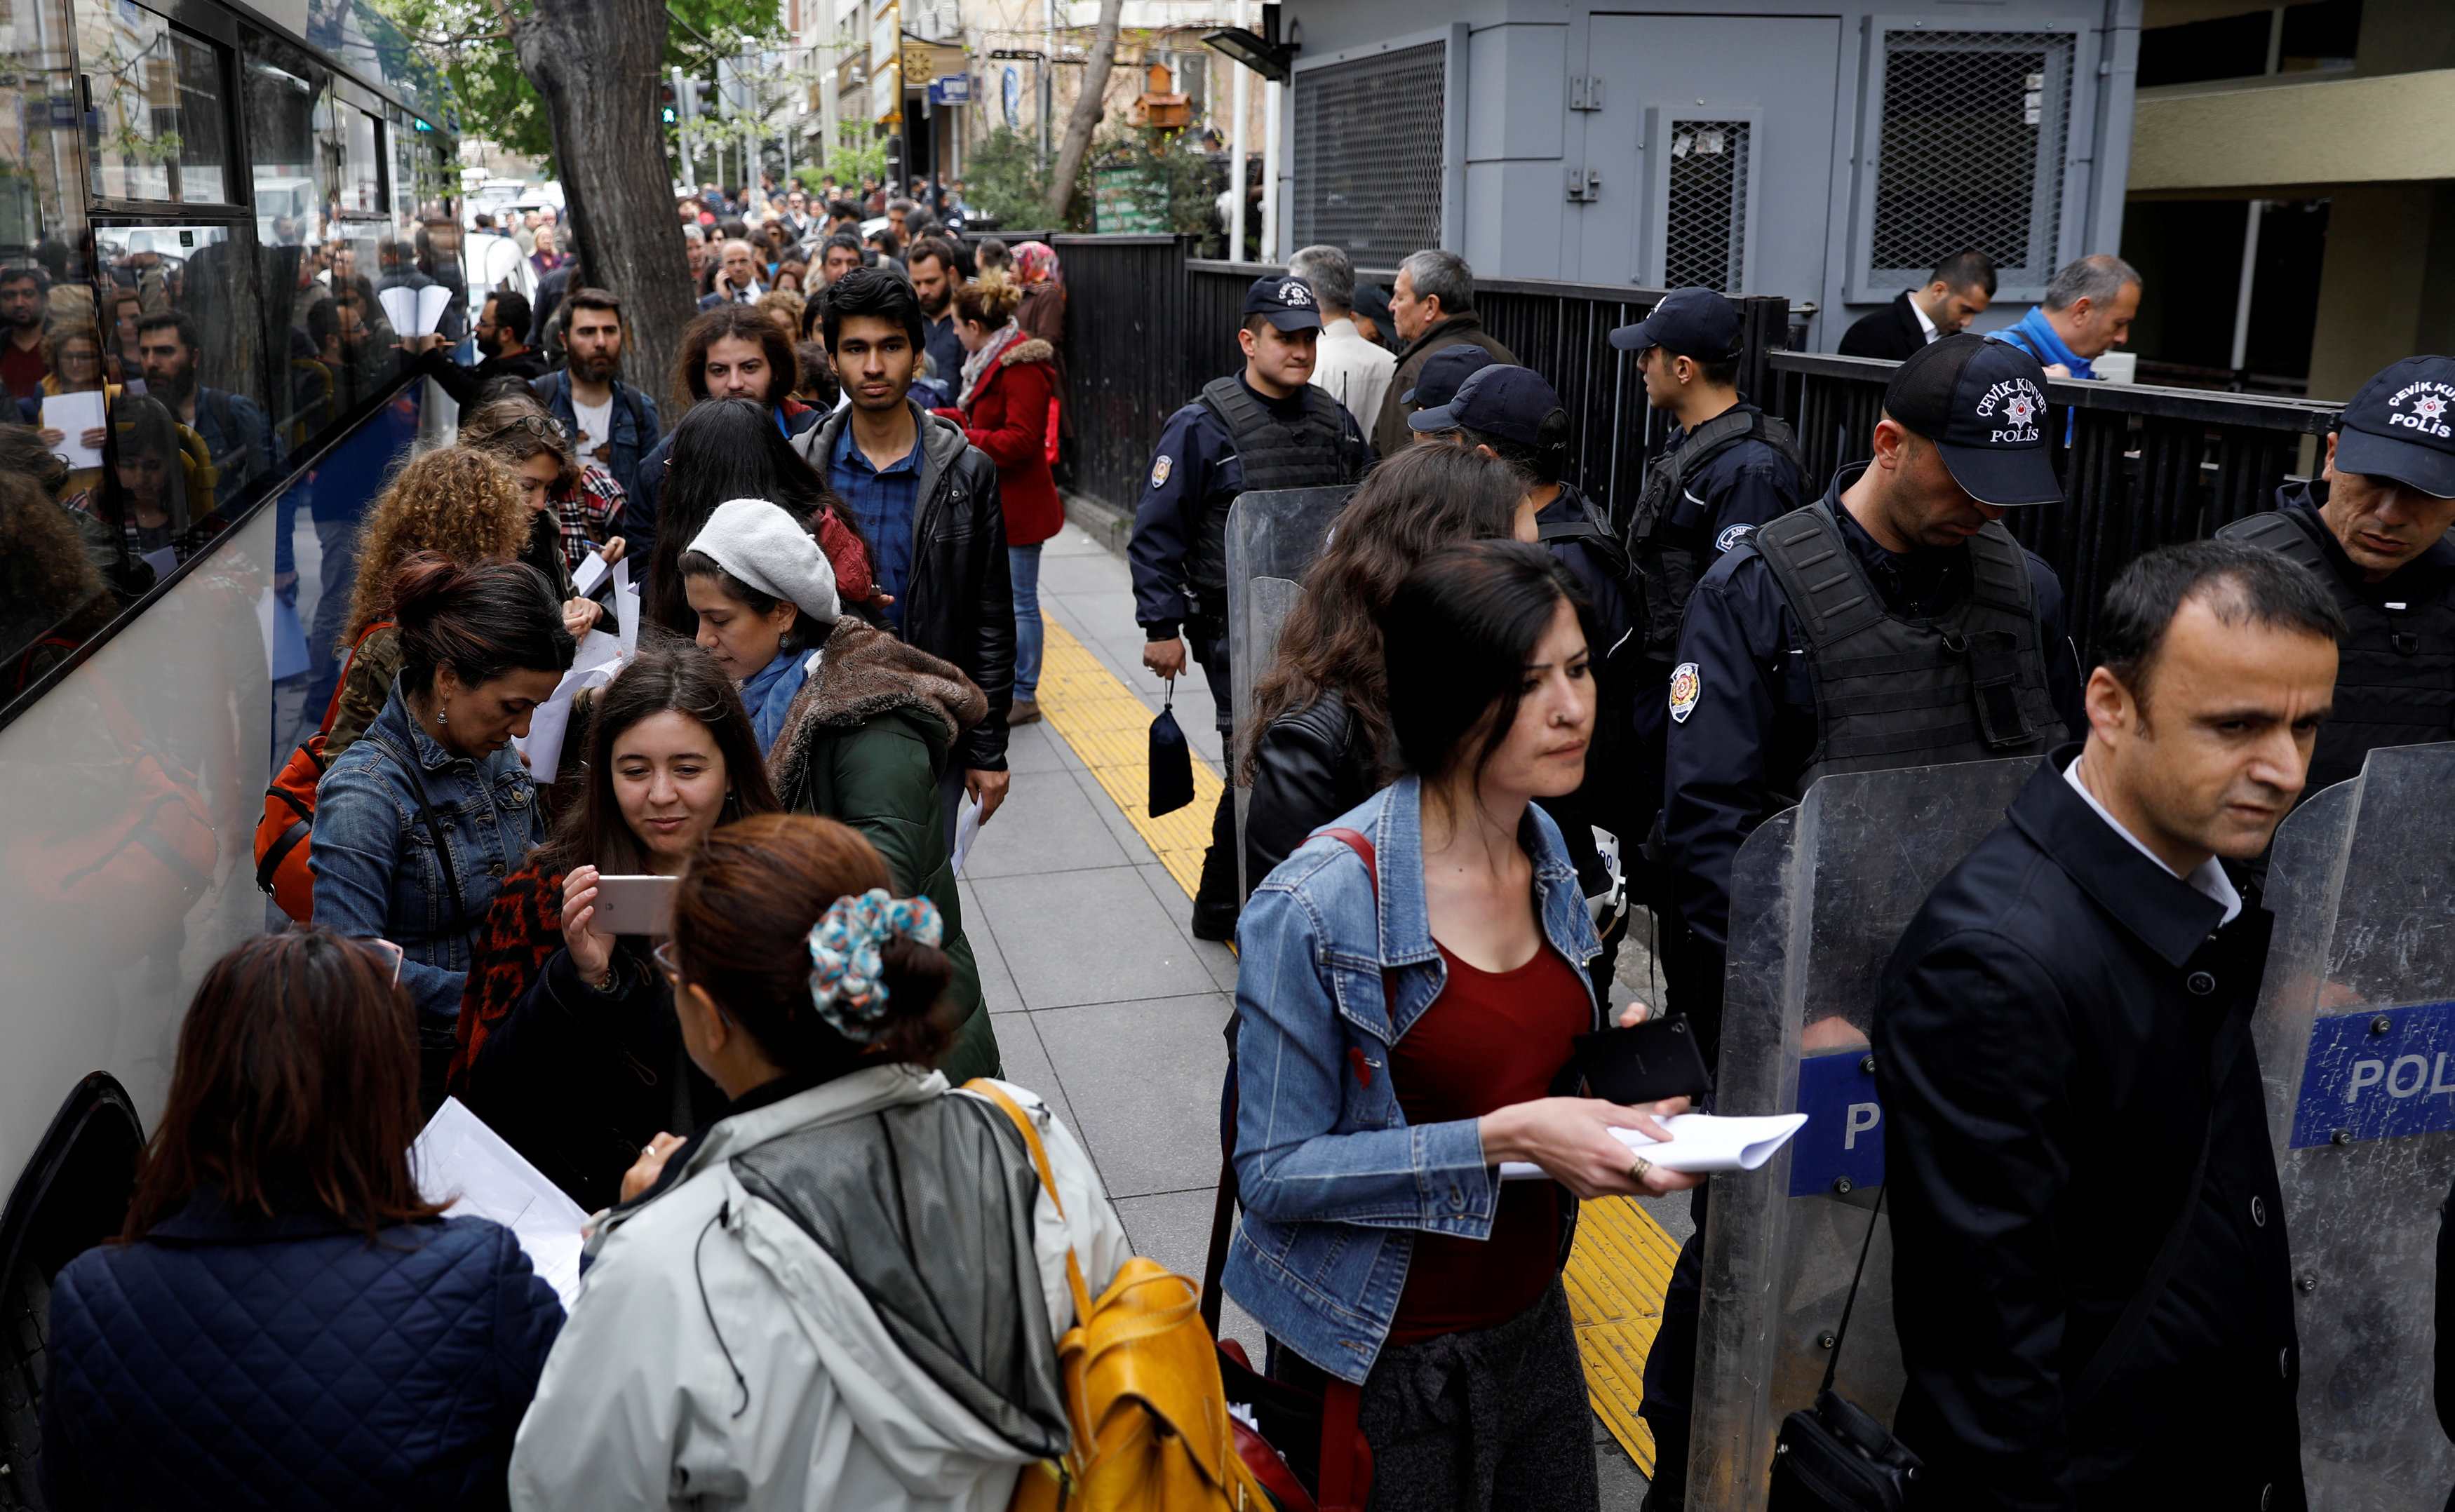 الأتراك ينتظرون في الطابور لتقديم طعونهم الشخصية لإلغاء الاستفتاء